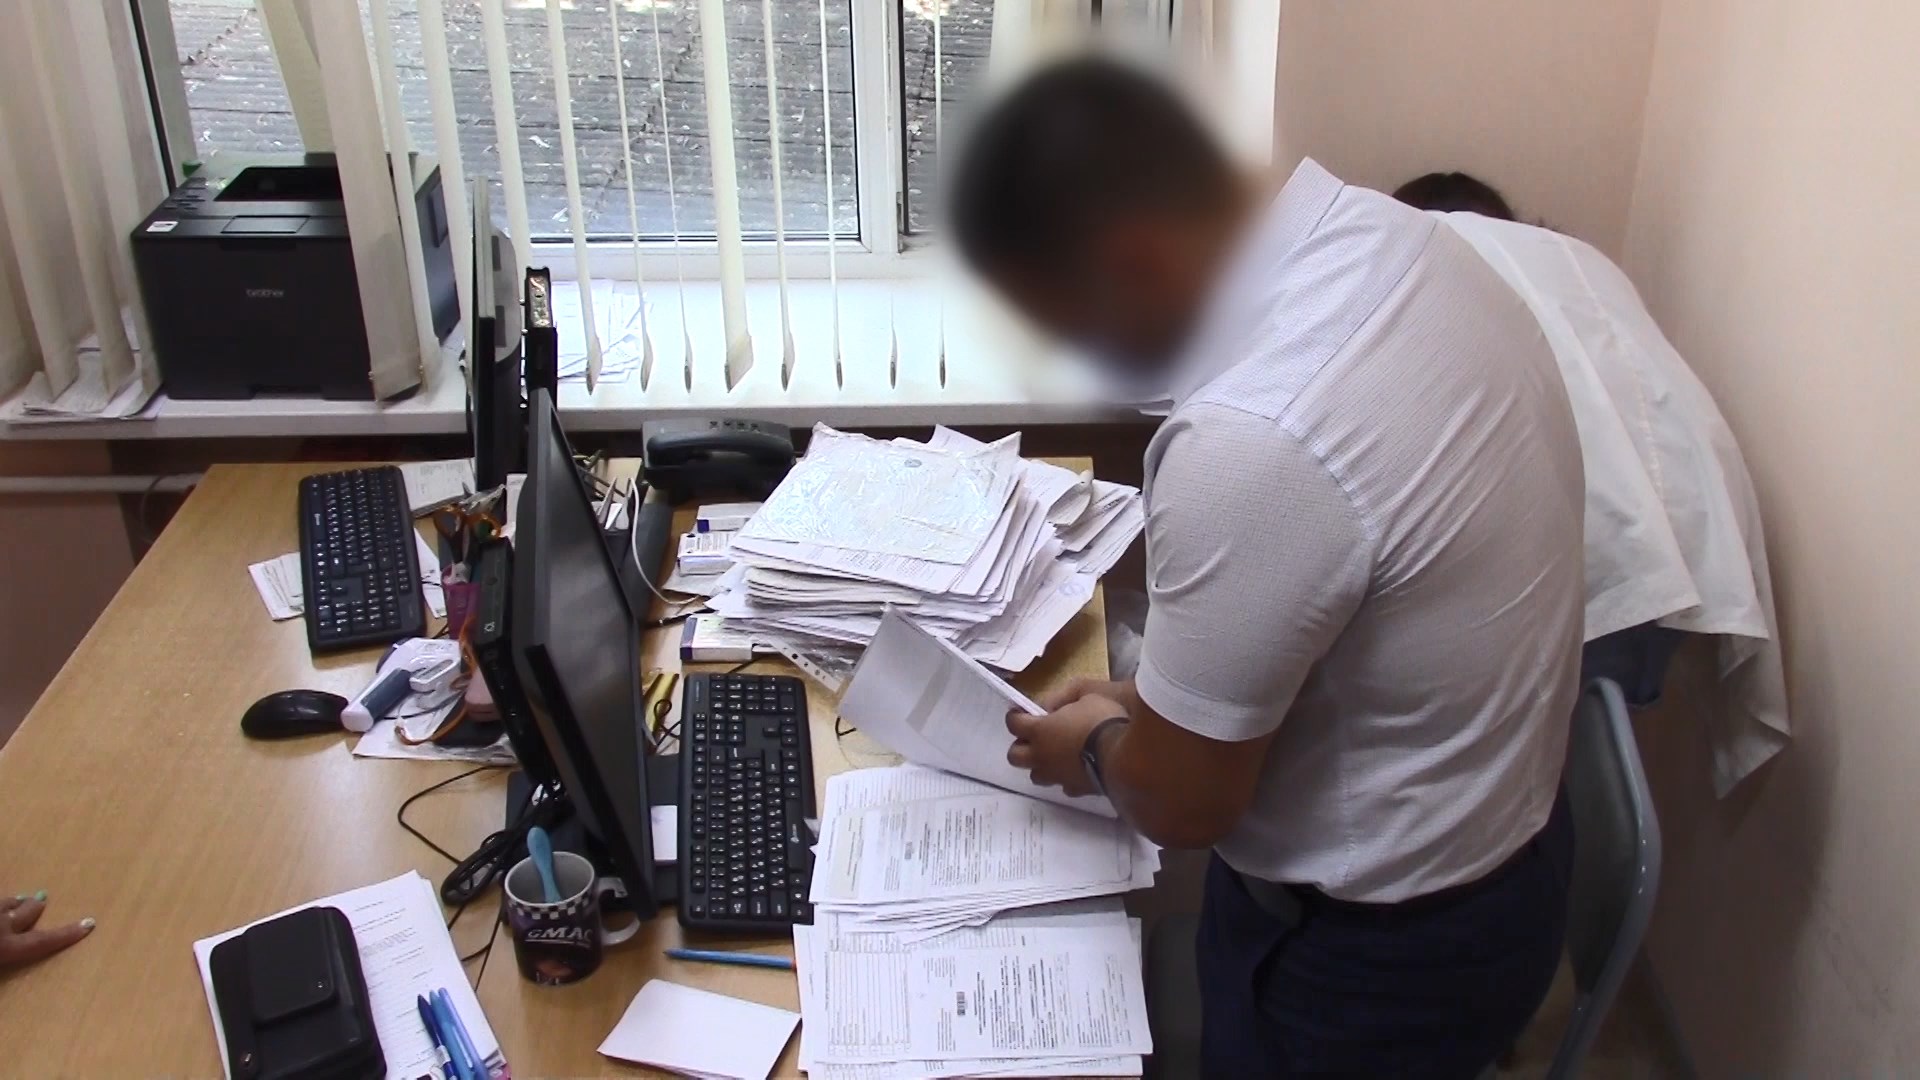 Продажу документов о прохождении вакцинации от коронавируса пресекли в Ростове-на-Дону